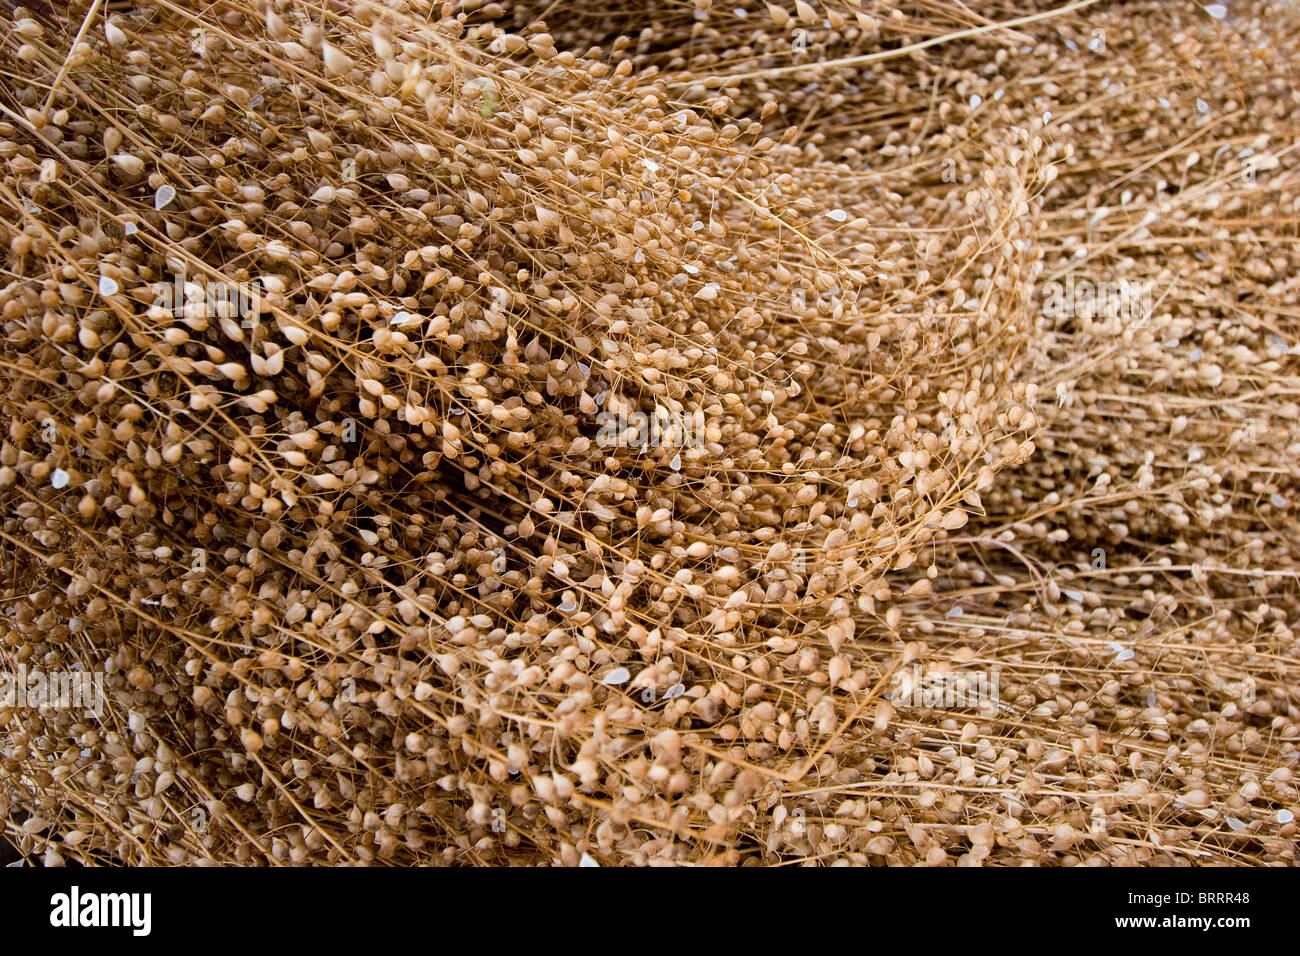 Camelina,(Camelina sativa), or false flax, grain up close whole grain Stock Photo